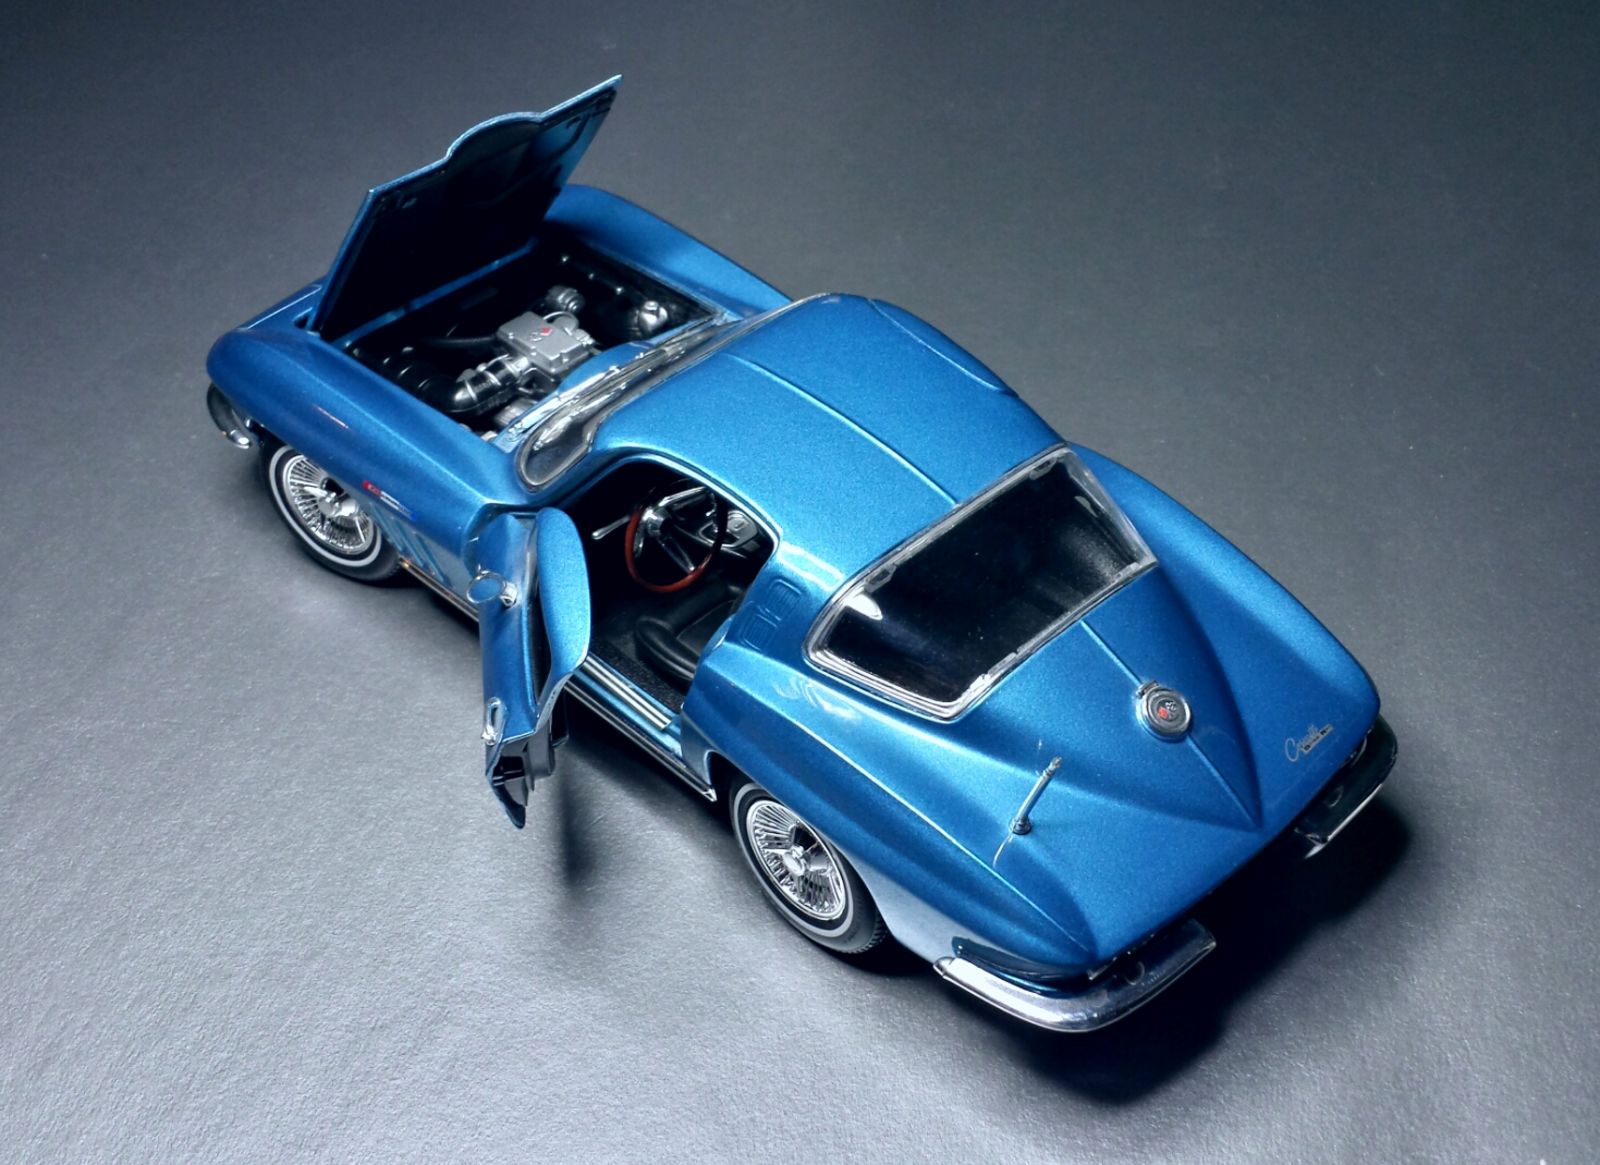 Illustration for article titled Merica Monday: 1965 Corvette